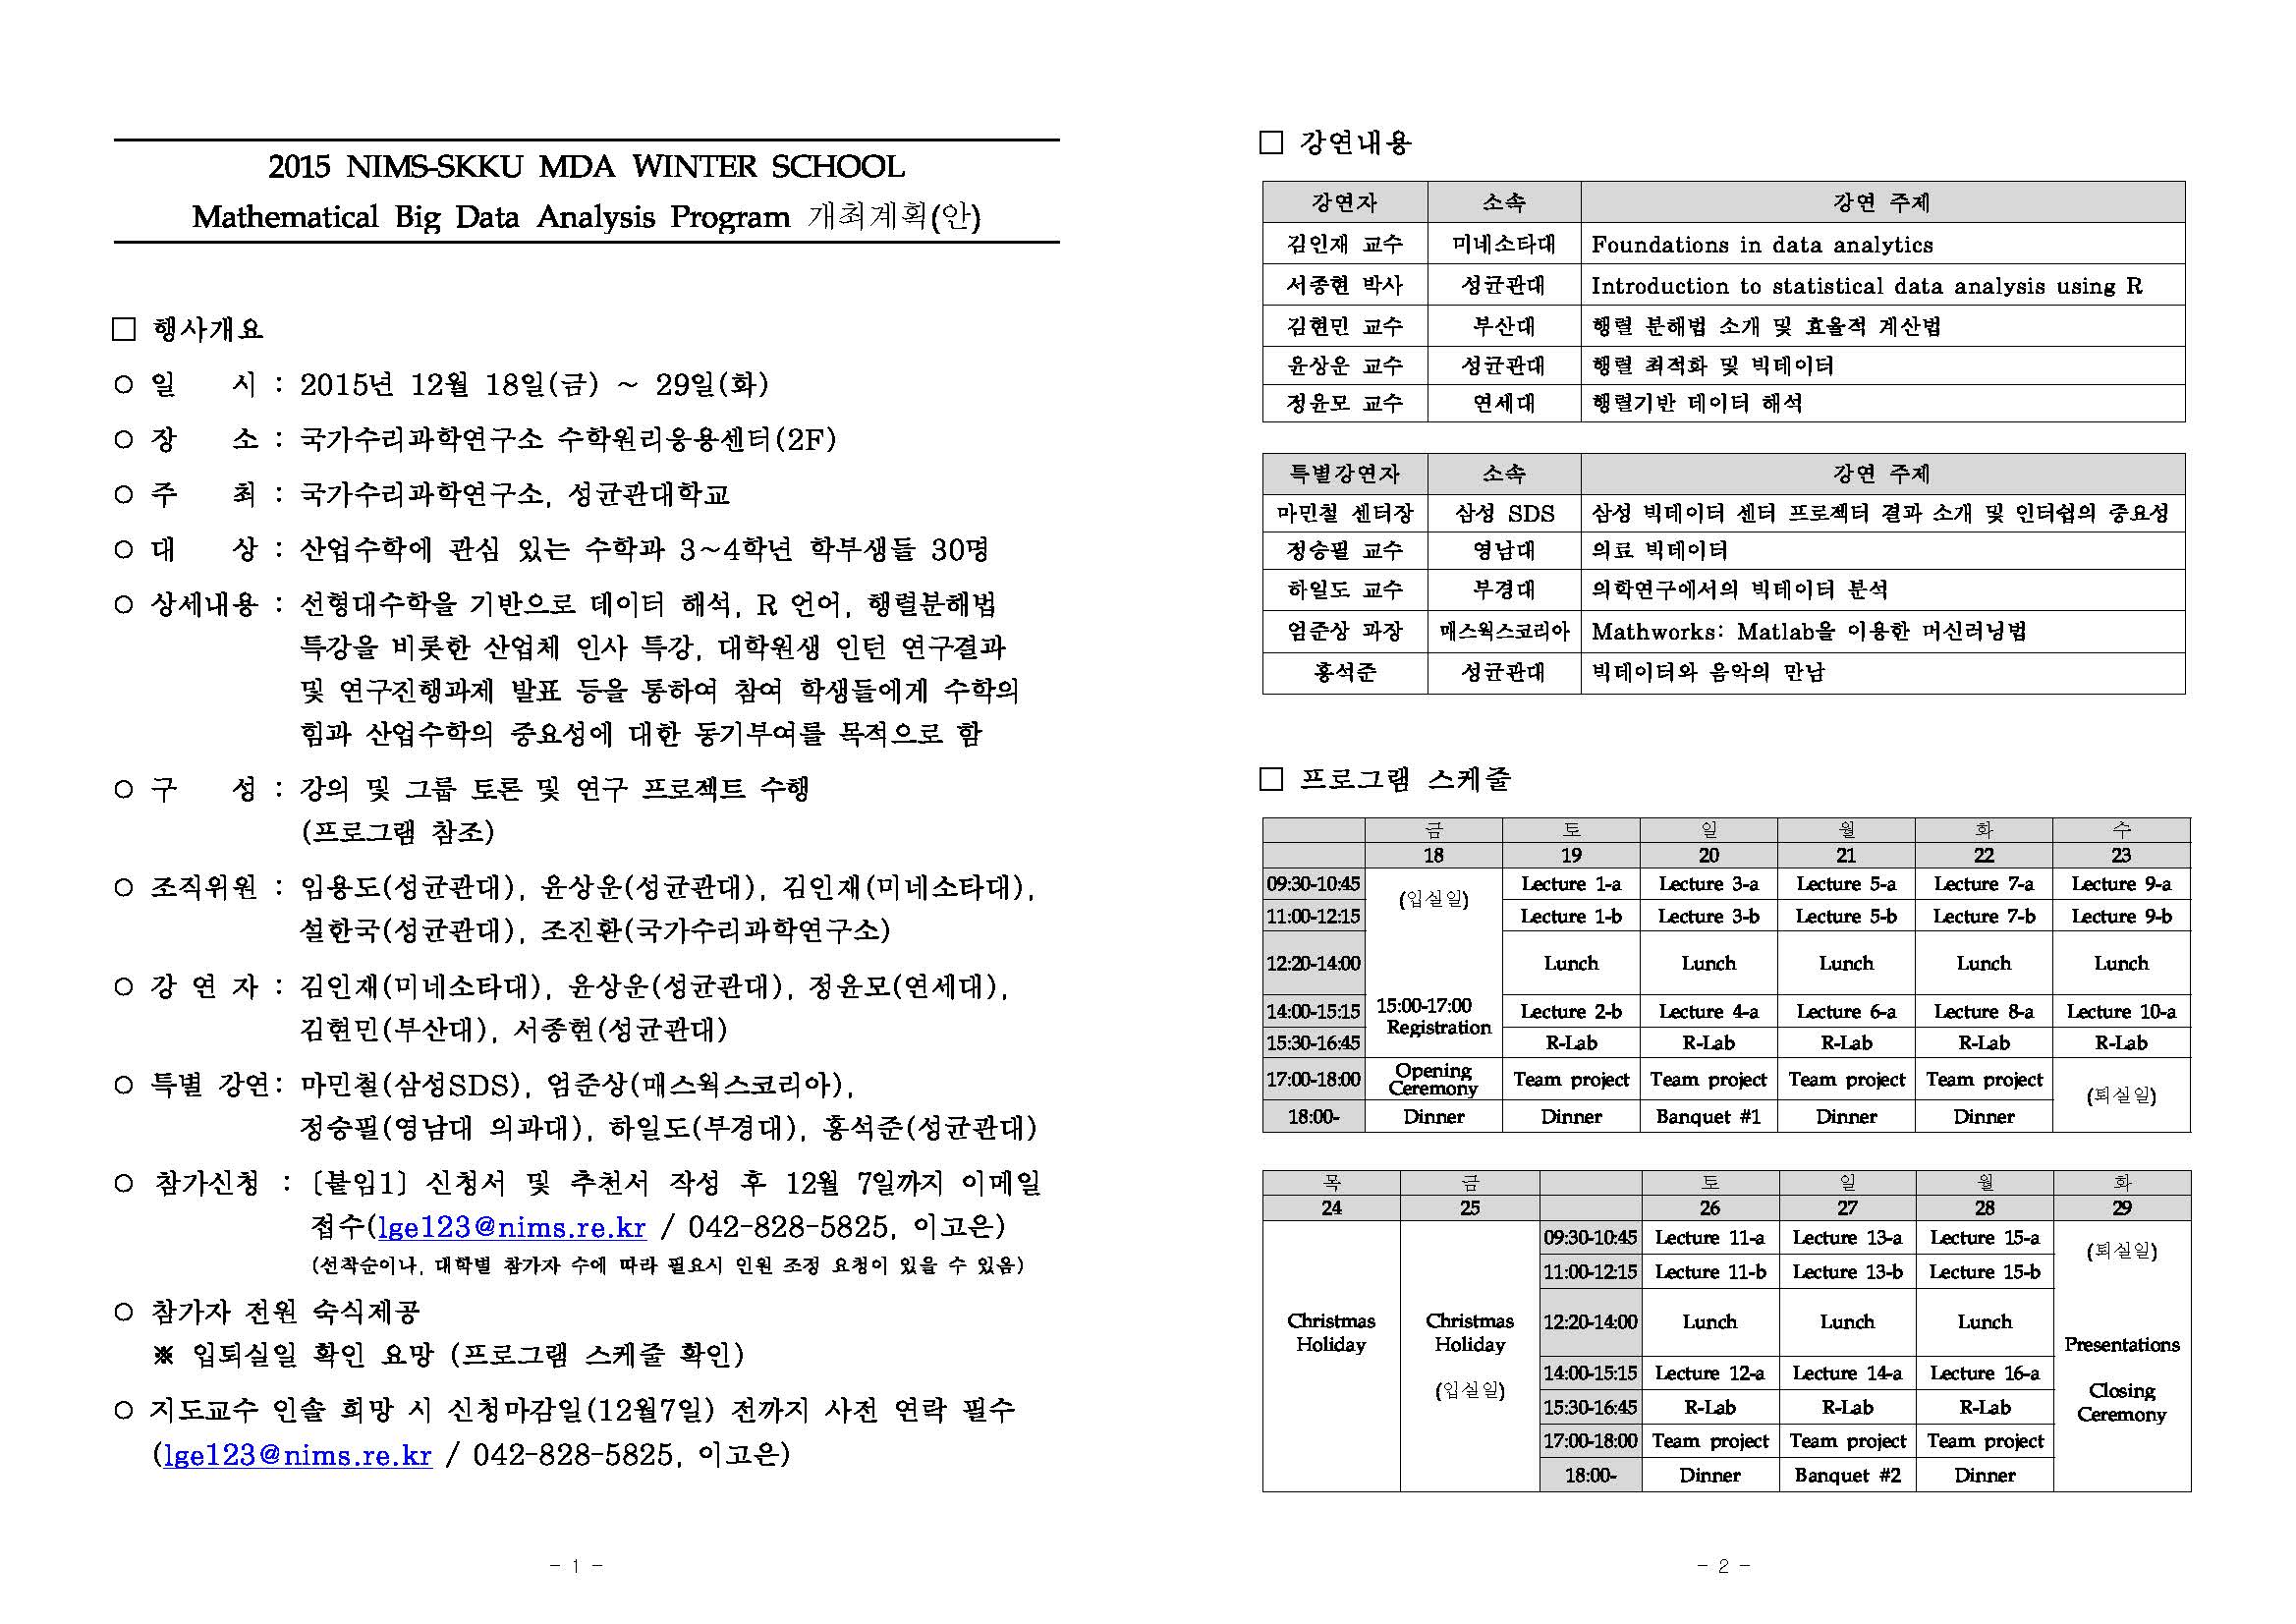 [첨부1] 2015 NIMS-SKKU MDA WINTER SCHOOL 개최 계획안_페이지_1.jpg